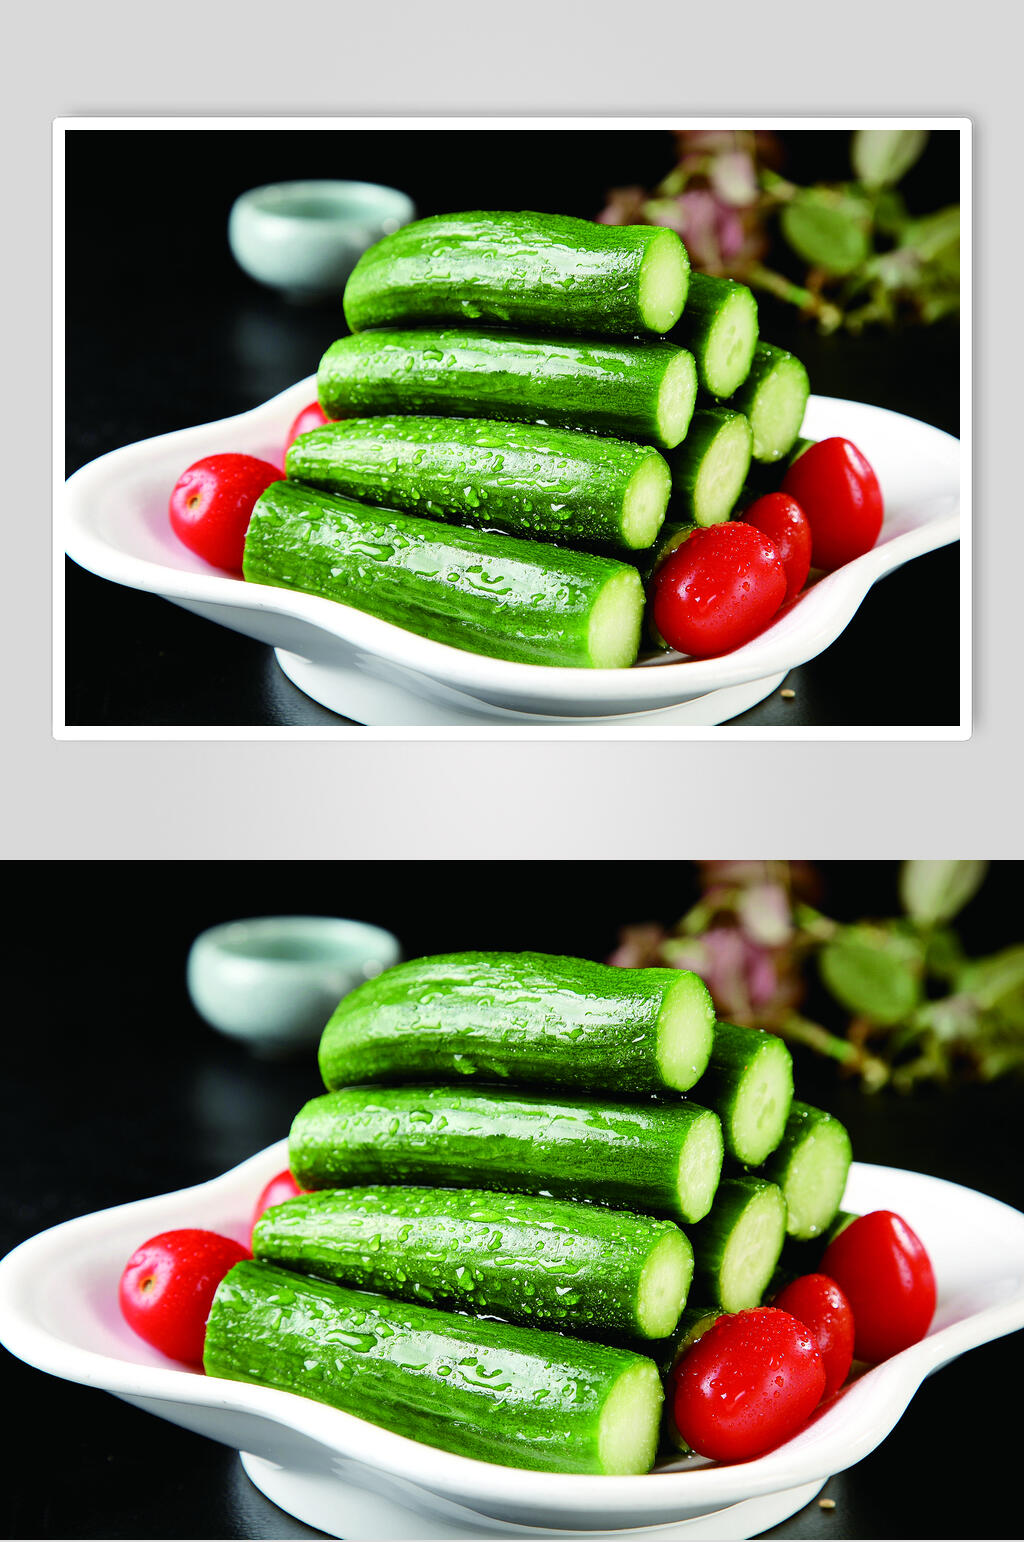 黄瓜蘸酱广告图片